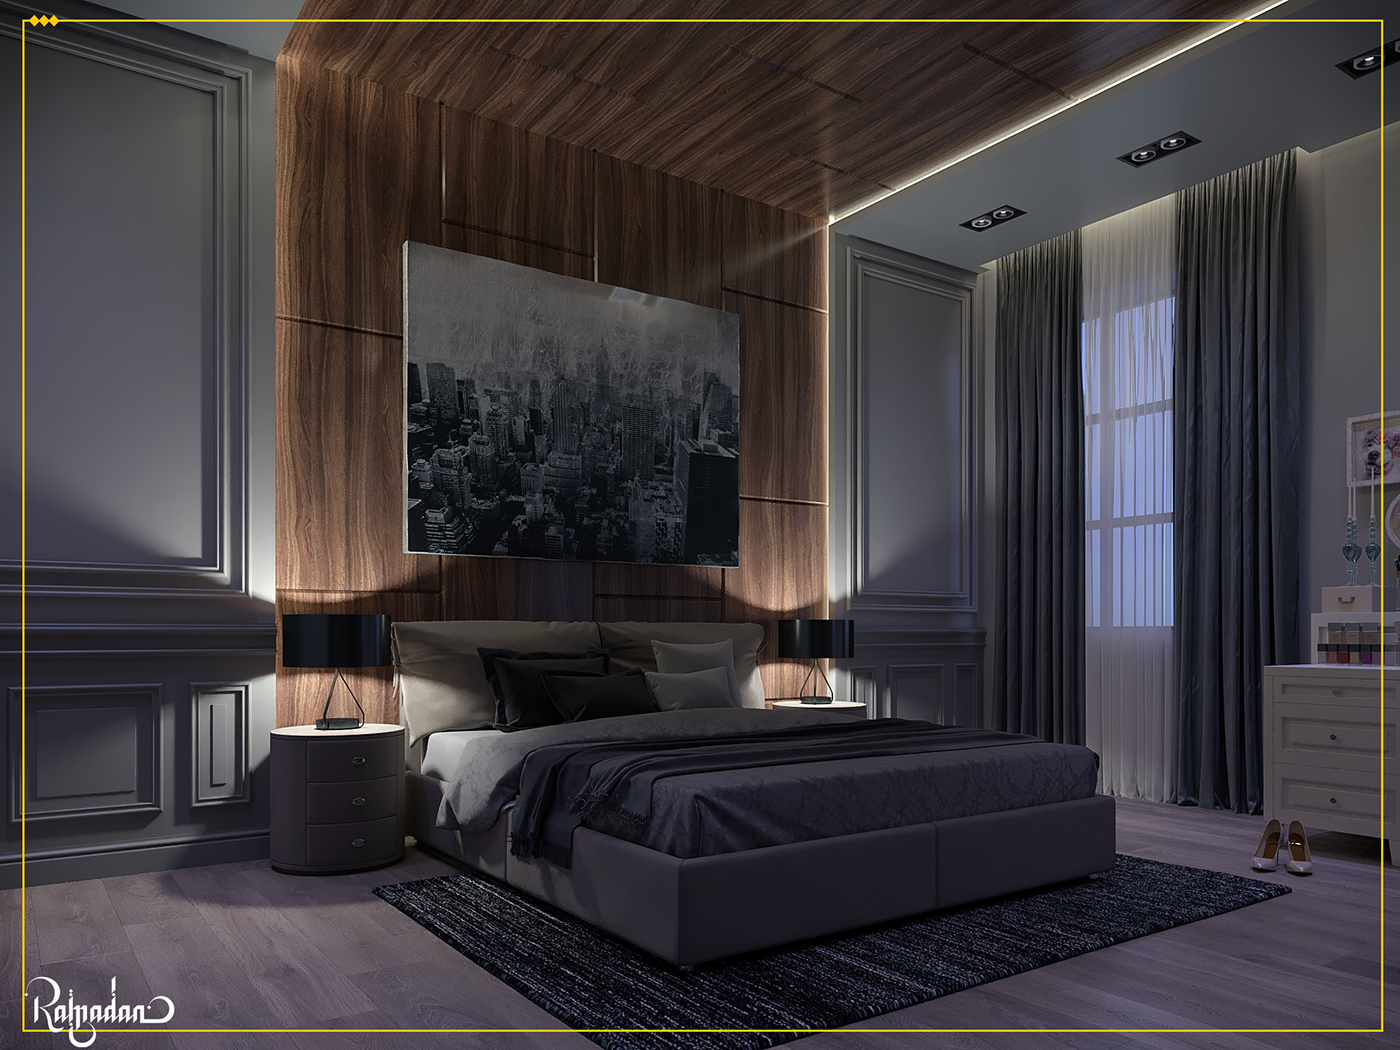 interiordesign architecture bedroom bedroomdesign